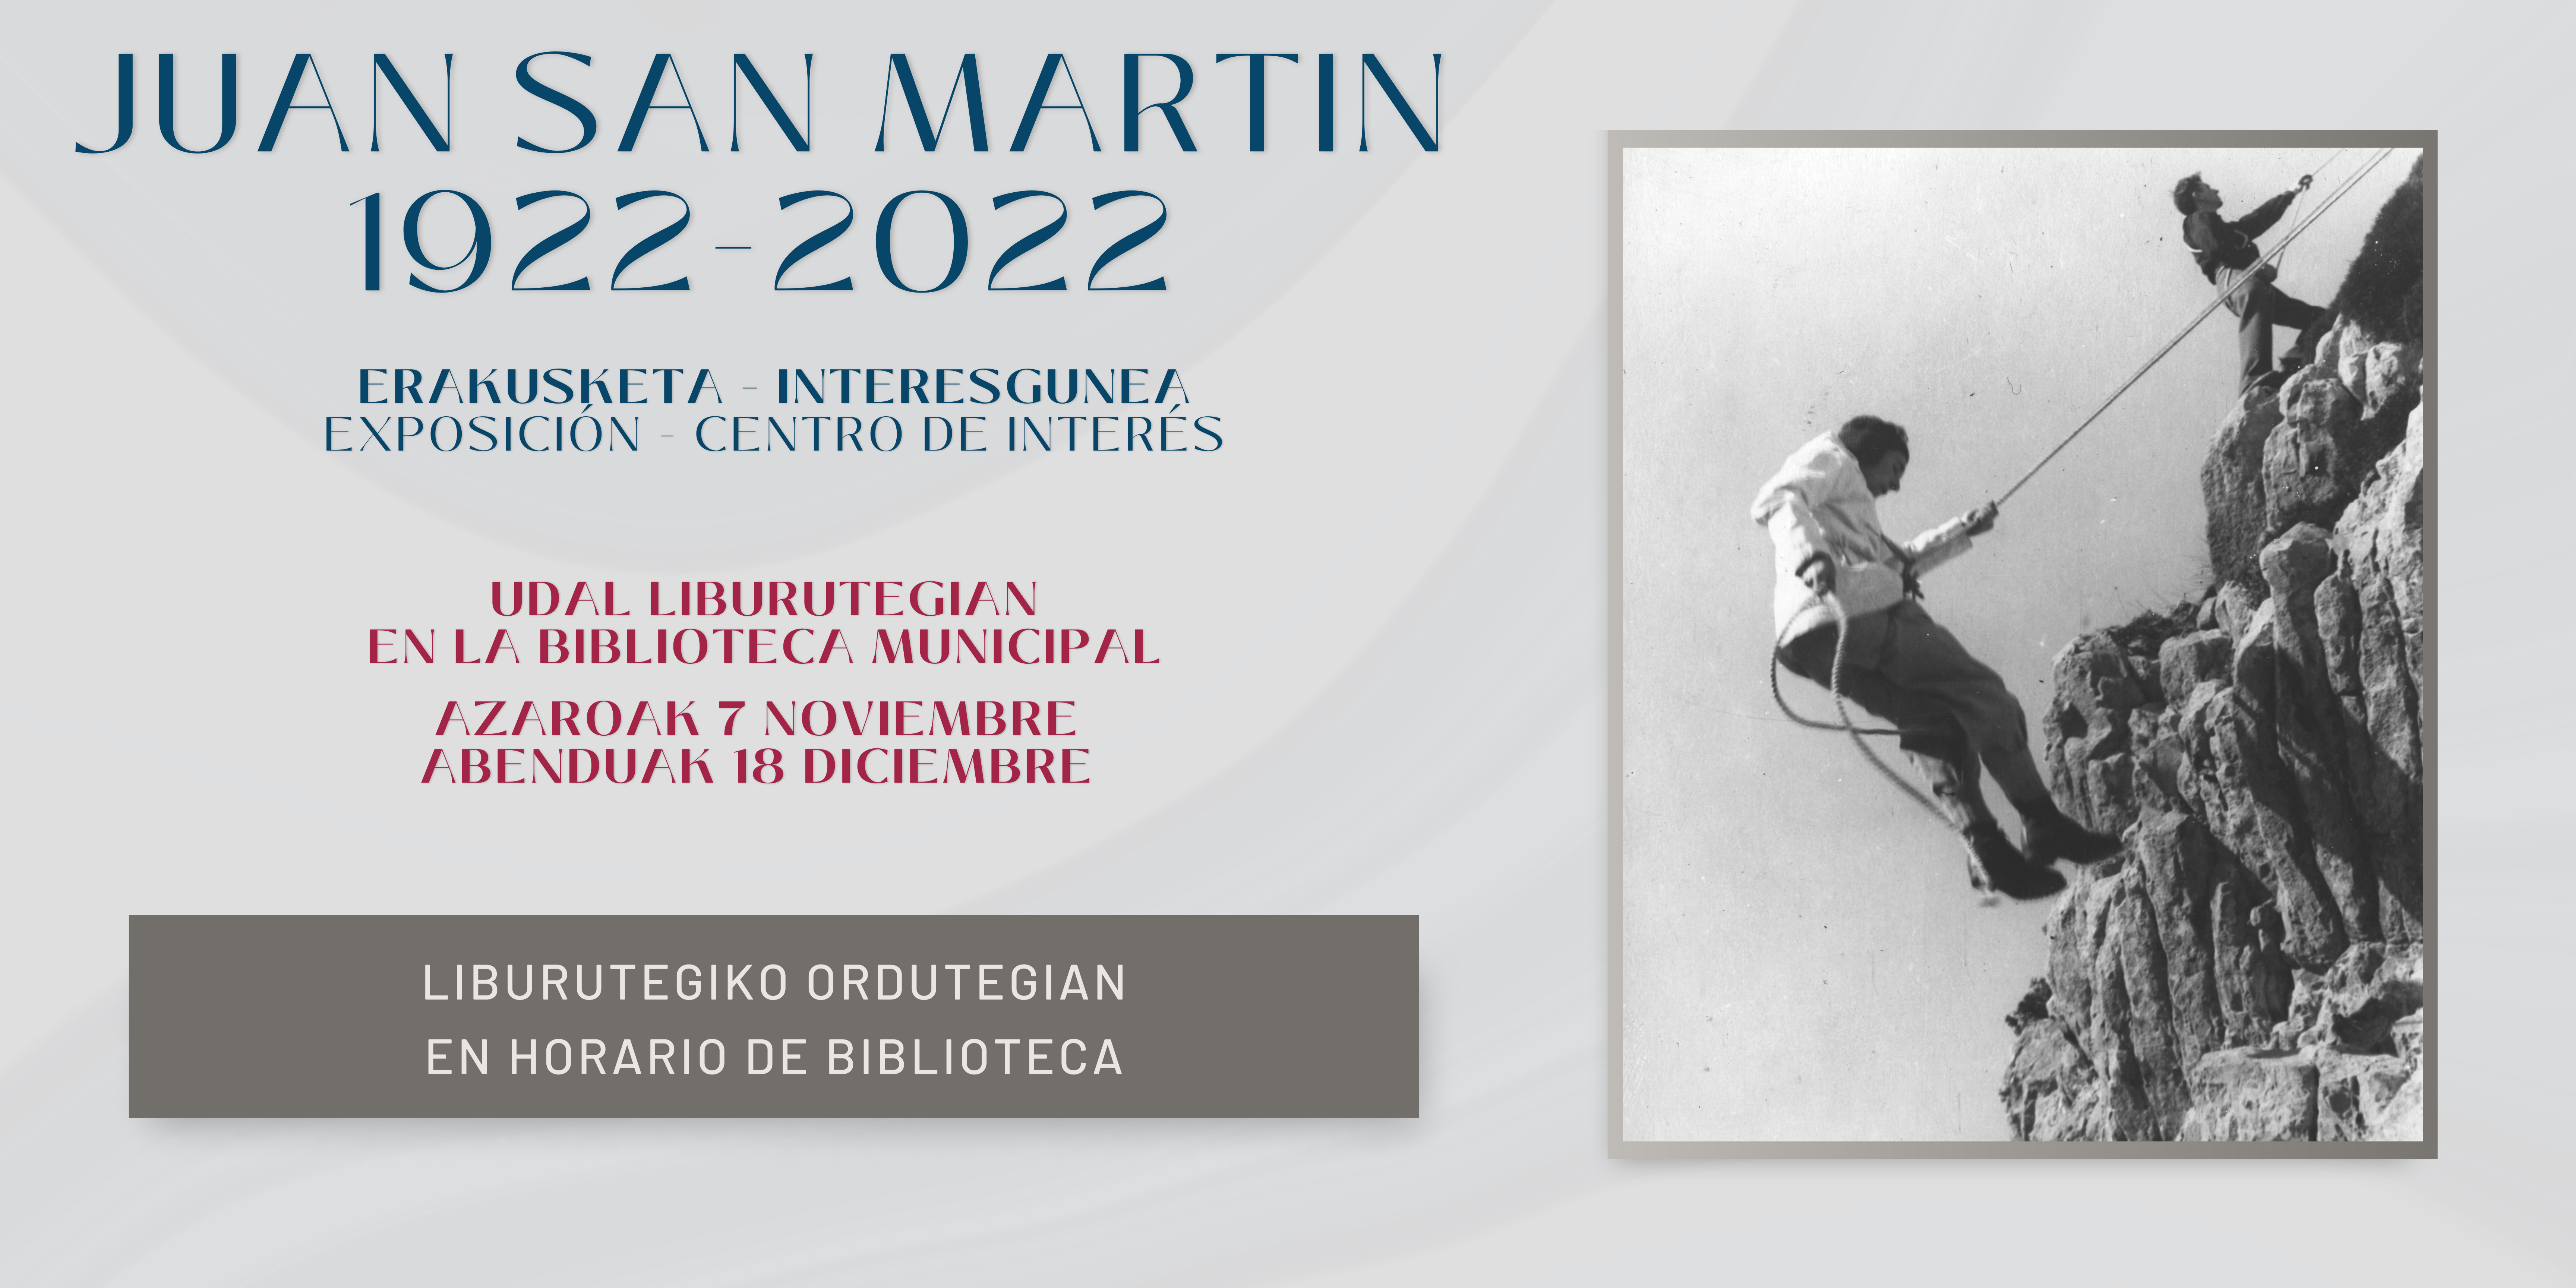 Juan San Martin 1922-2022: exposición - centro de interés